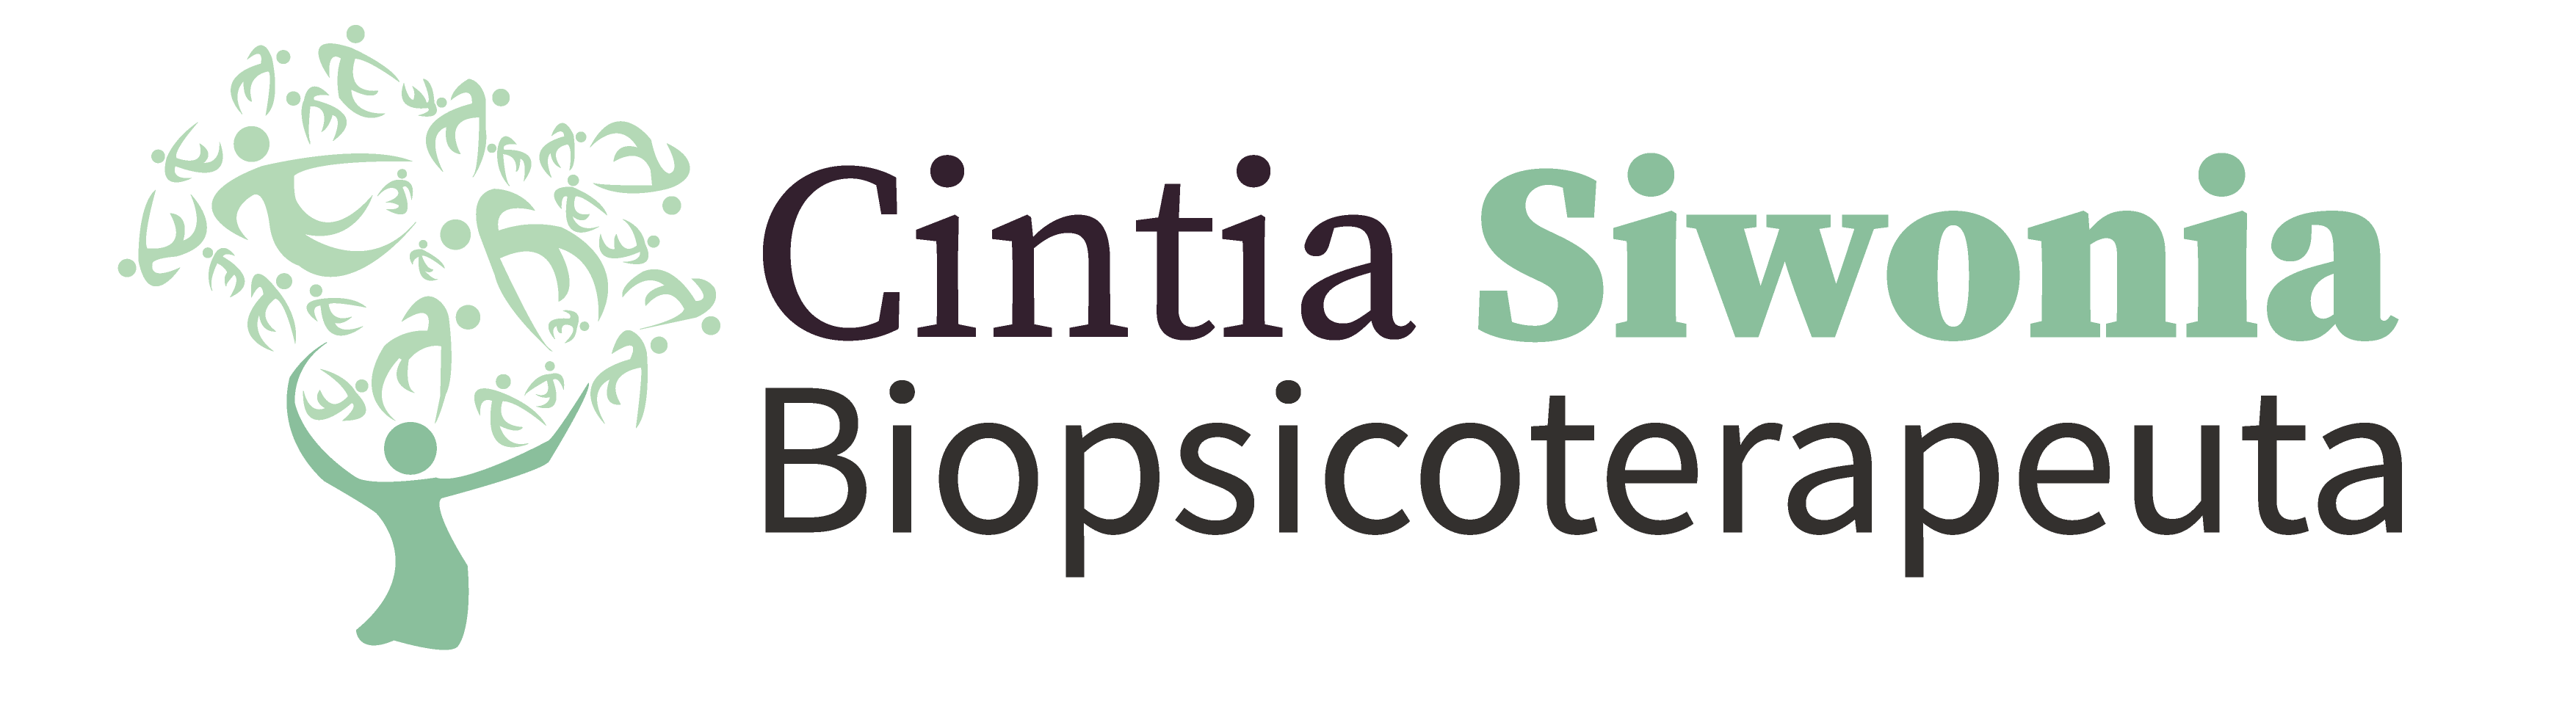 Cintia Siwonia, Biopsicoterapeuta